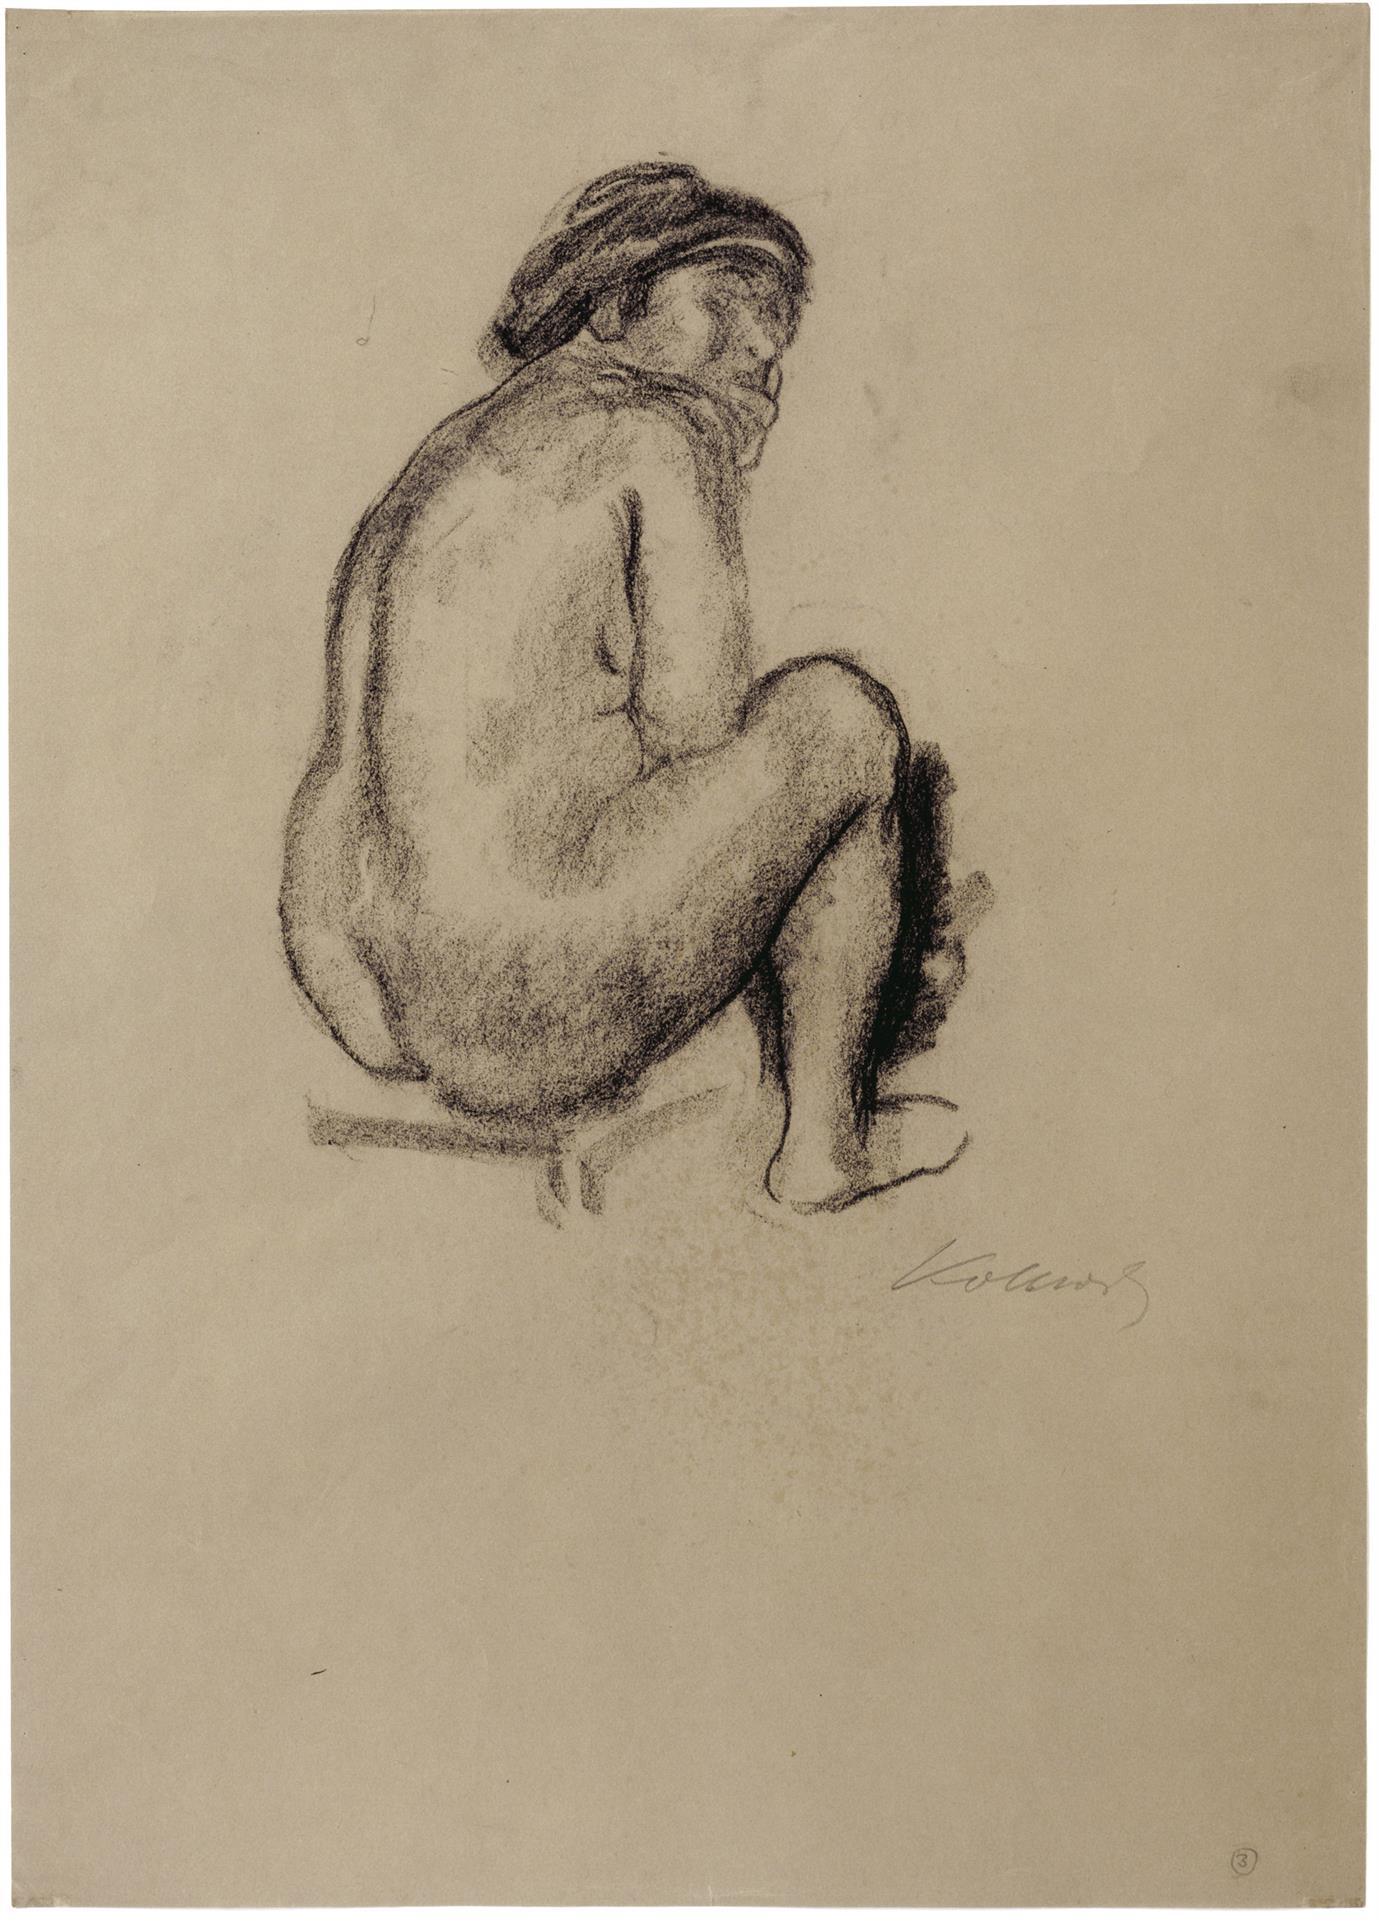 Käthe Kollwitz, Sitzender weiblicher Rückenakt nach rechts, um 1910-1912, Kohle auf braunem Papier, NT 674